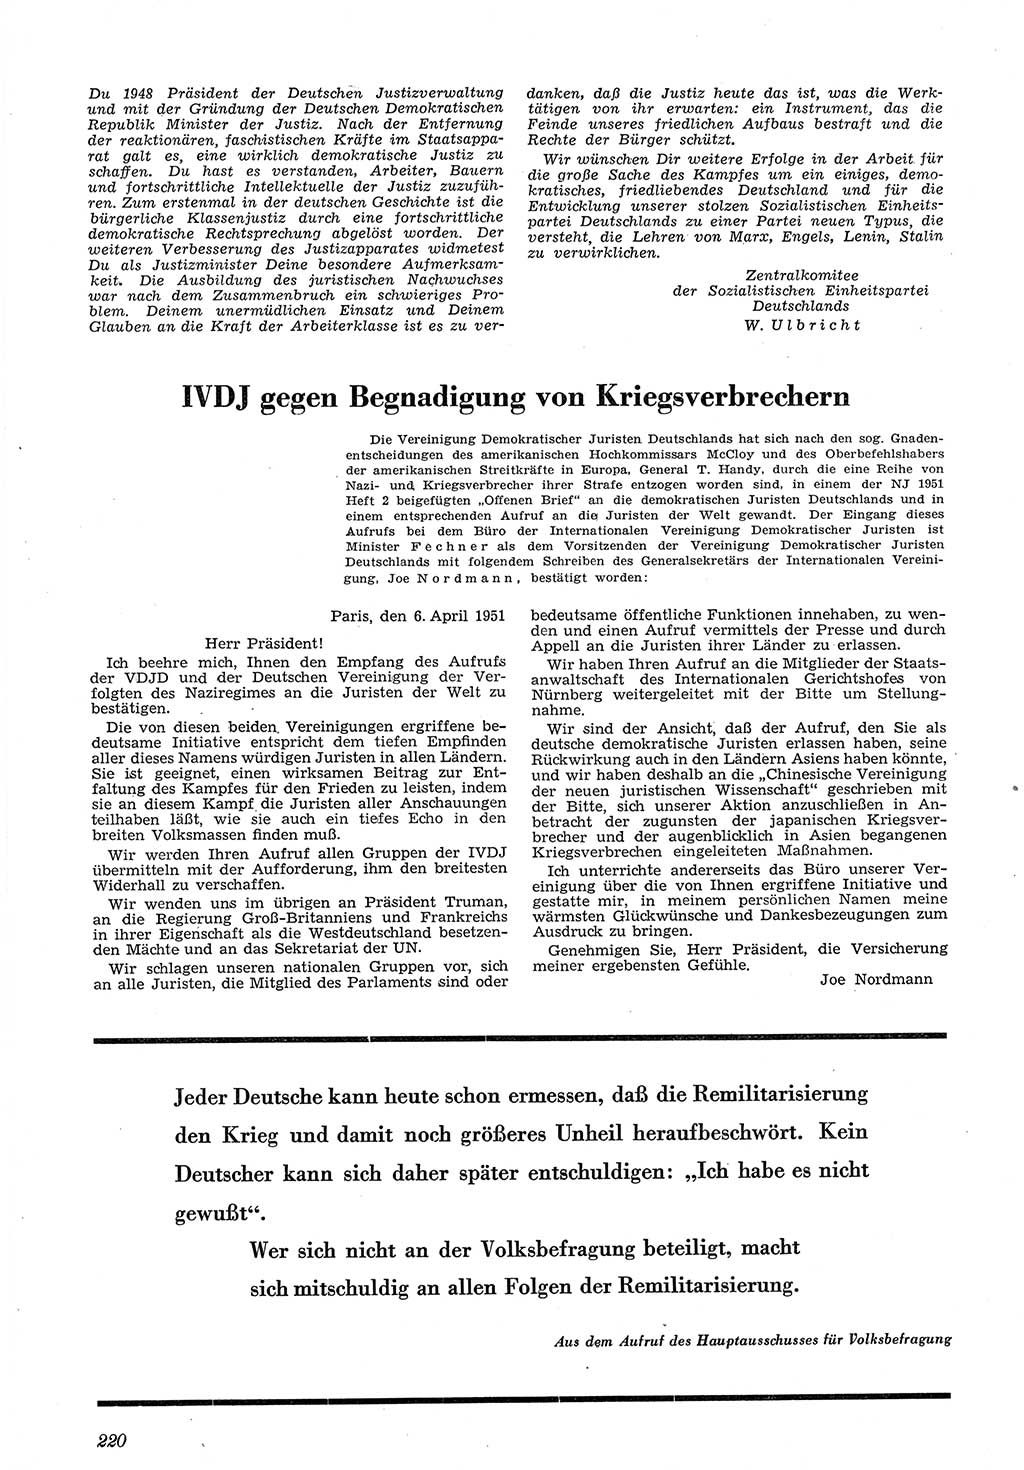 Neue Justiz (NJ), Zeitschrift für Recht und Rechtswissenschaft [Deutsche Demokratische Republik (DDR)], 5. Jahrgang 1951, Seite 220 (NJ DDR 1951, S. 220)